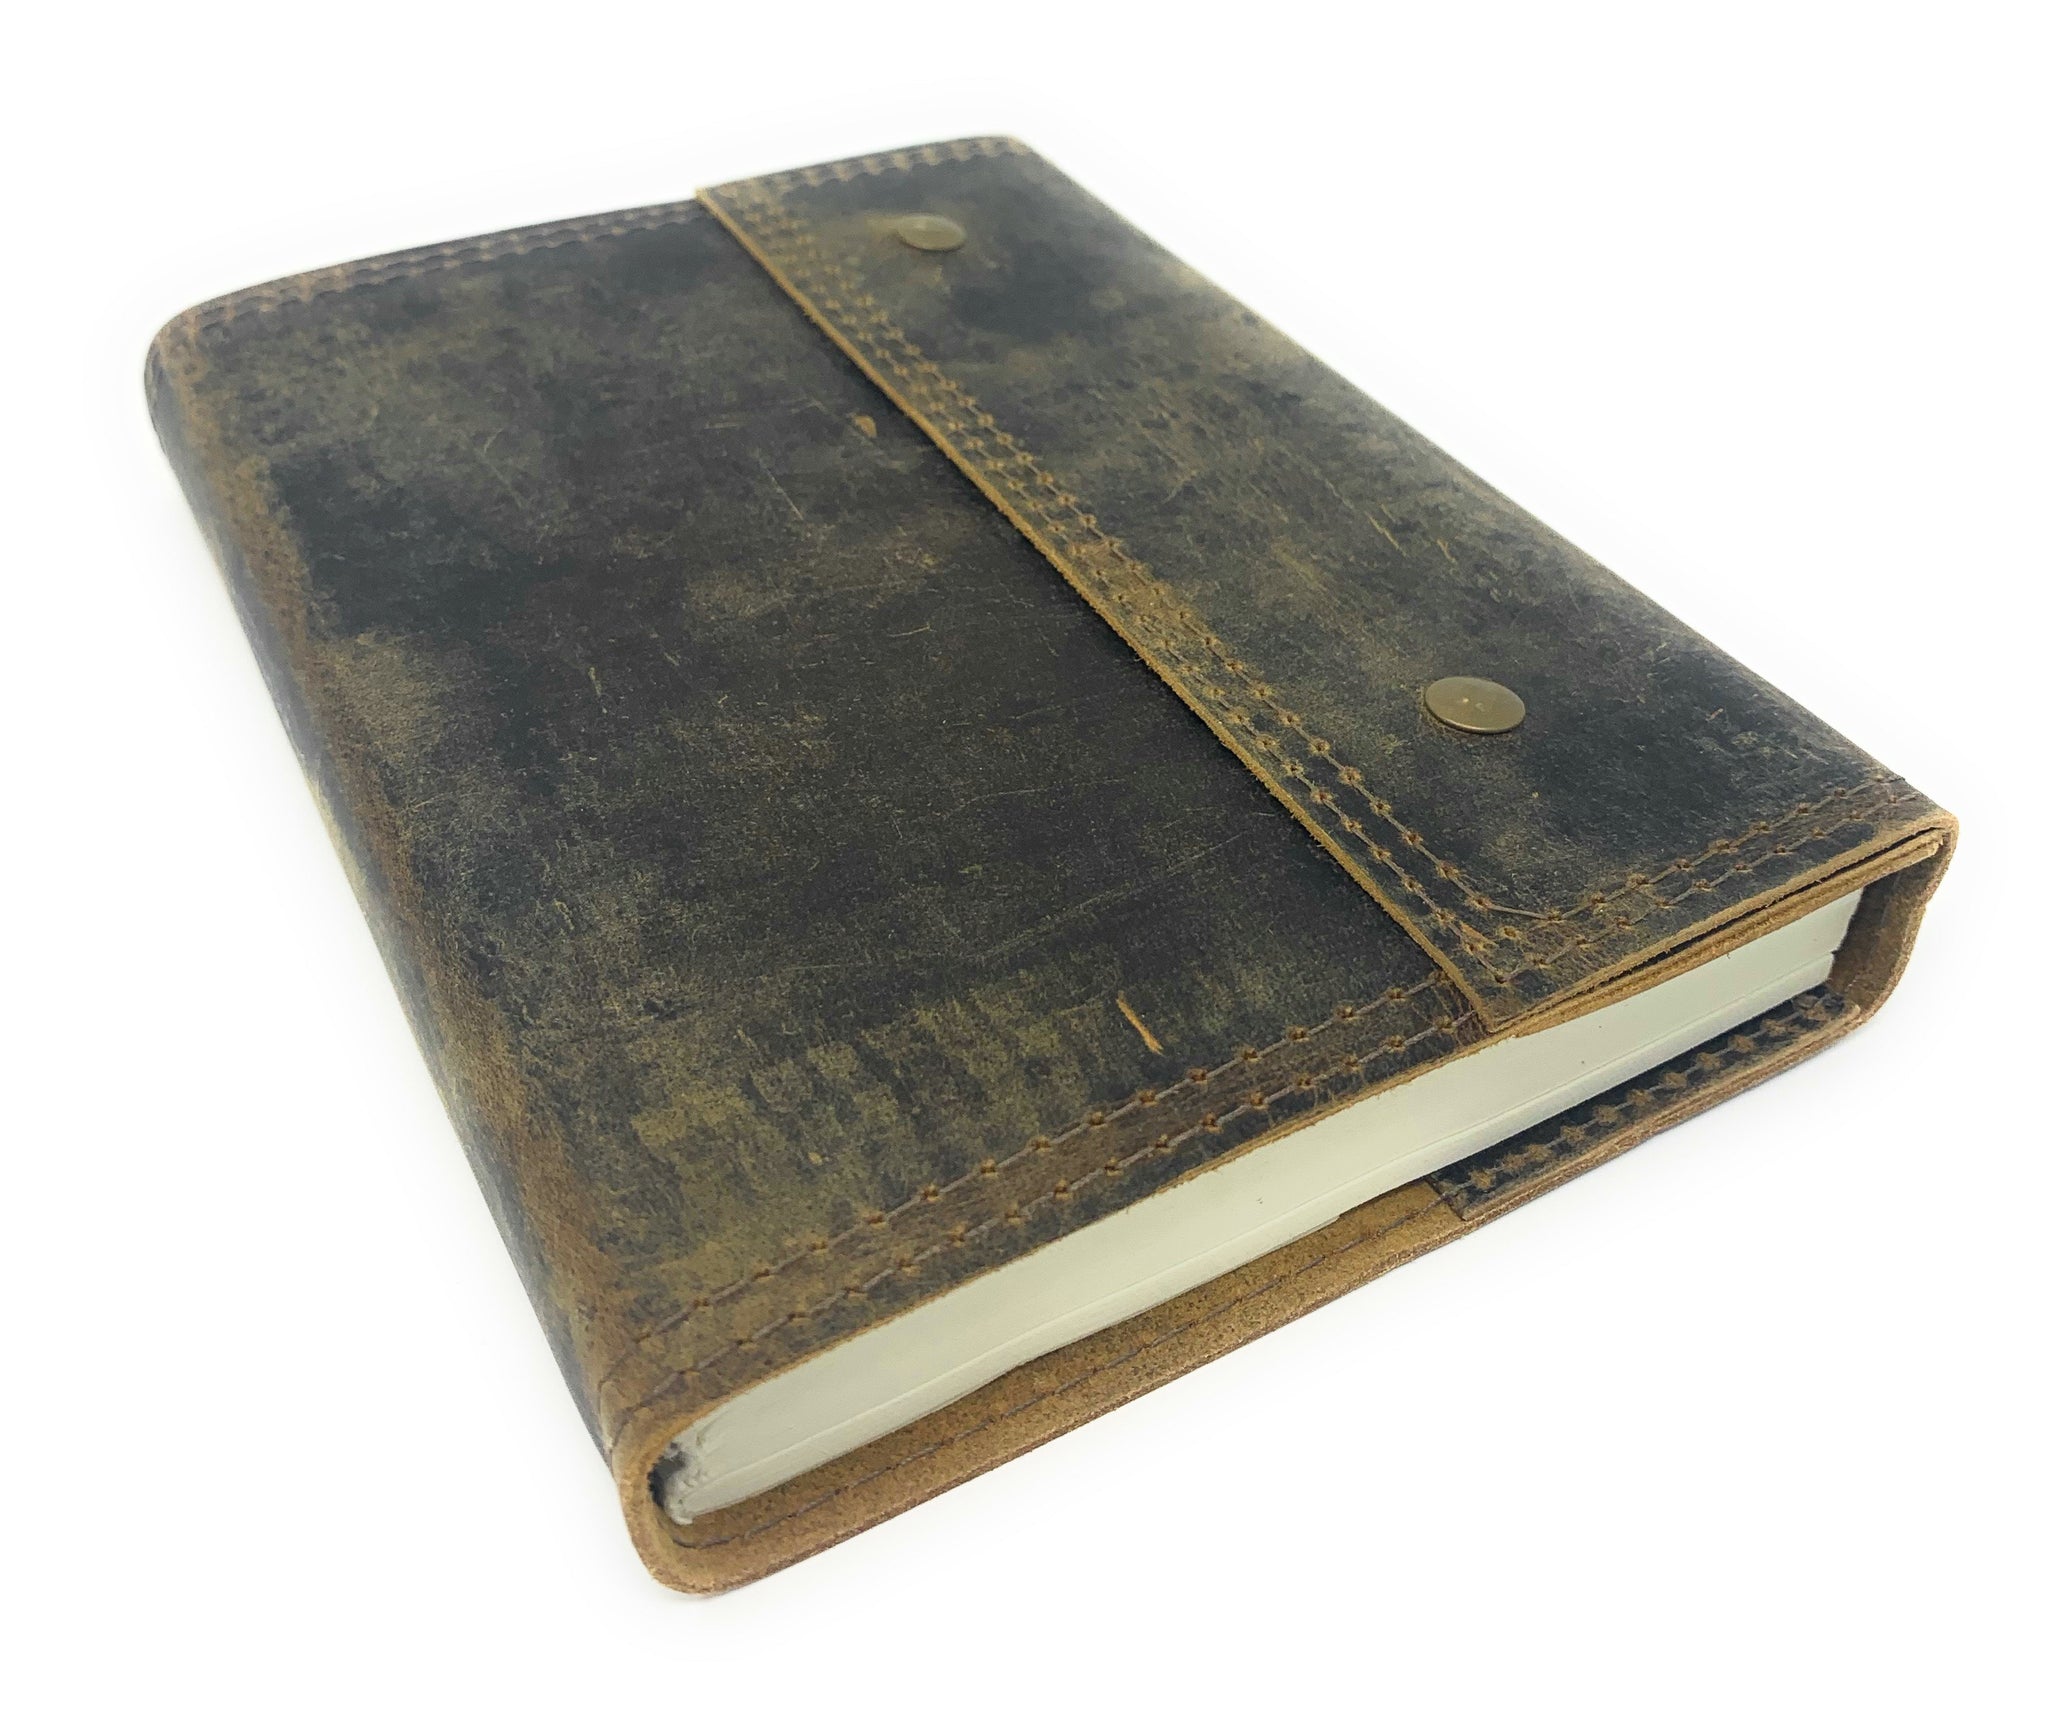 Dainzusyful Notebook Journaling Notebooks Leather Journal Notebook